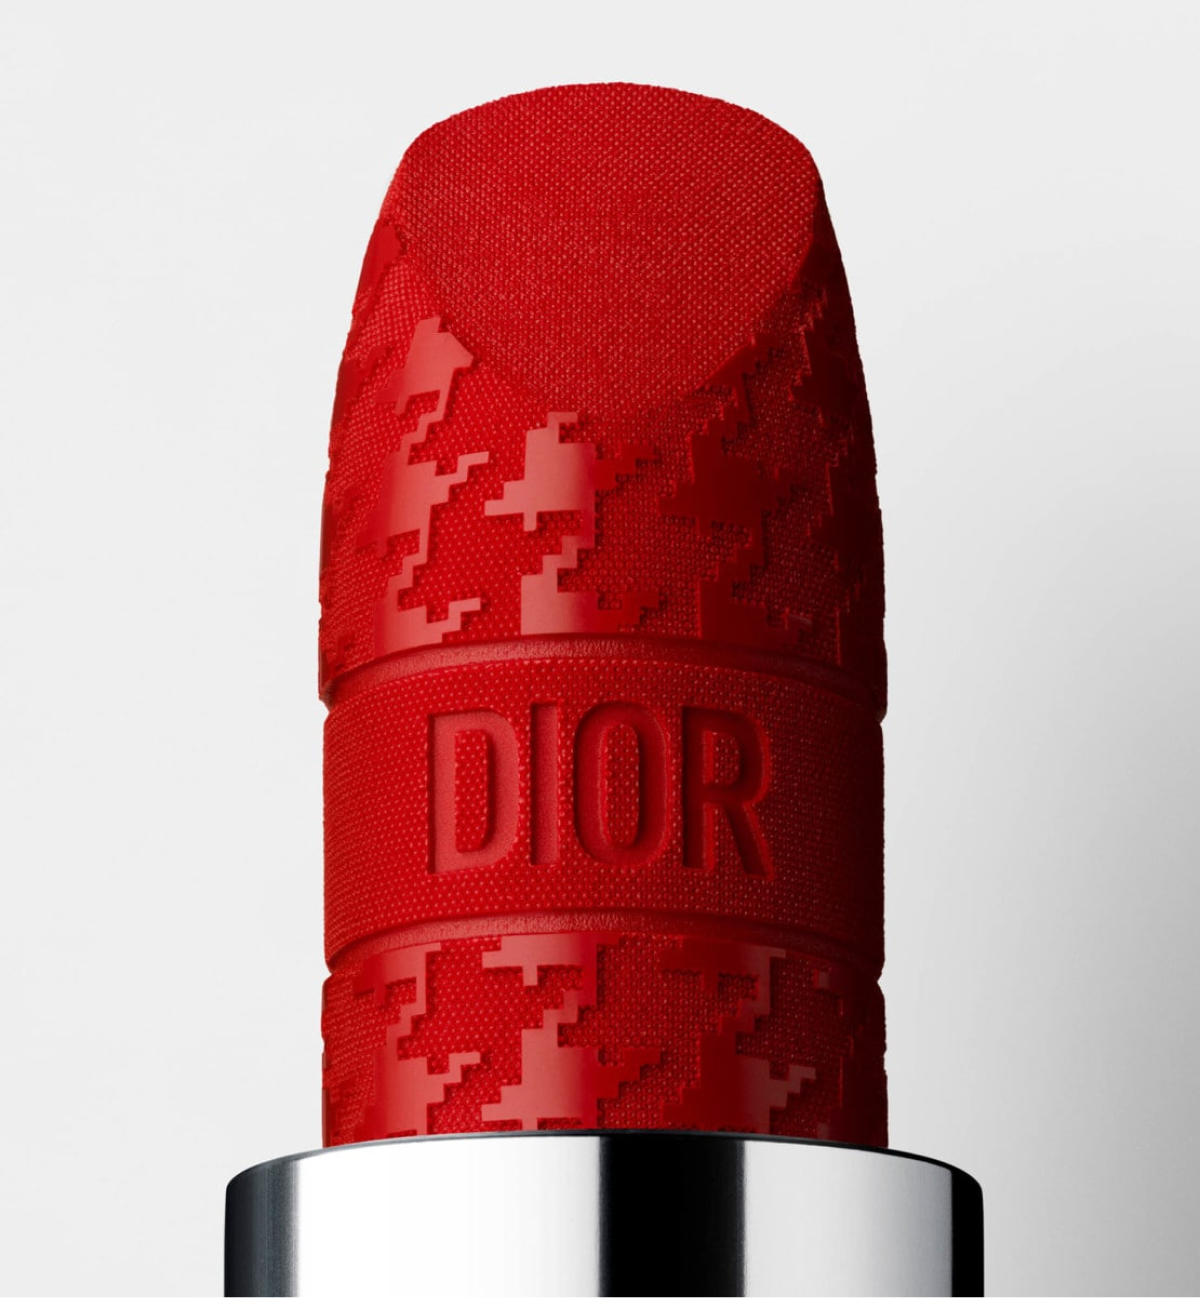 Dior представил новую коллекцию косметики и ароматов New Look (фото 7)